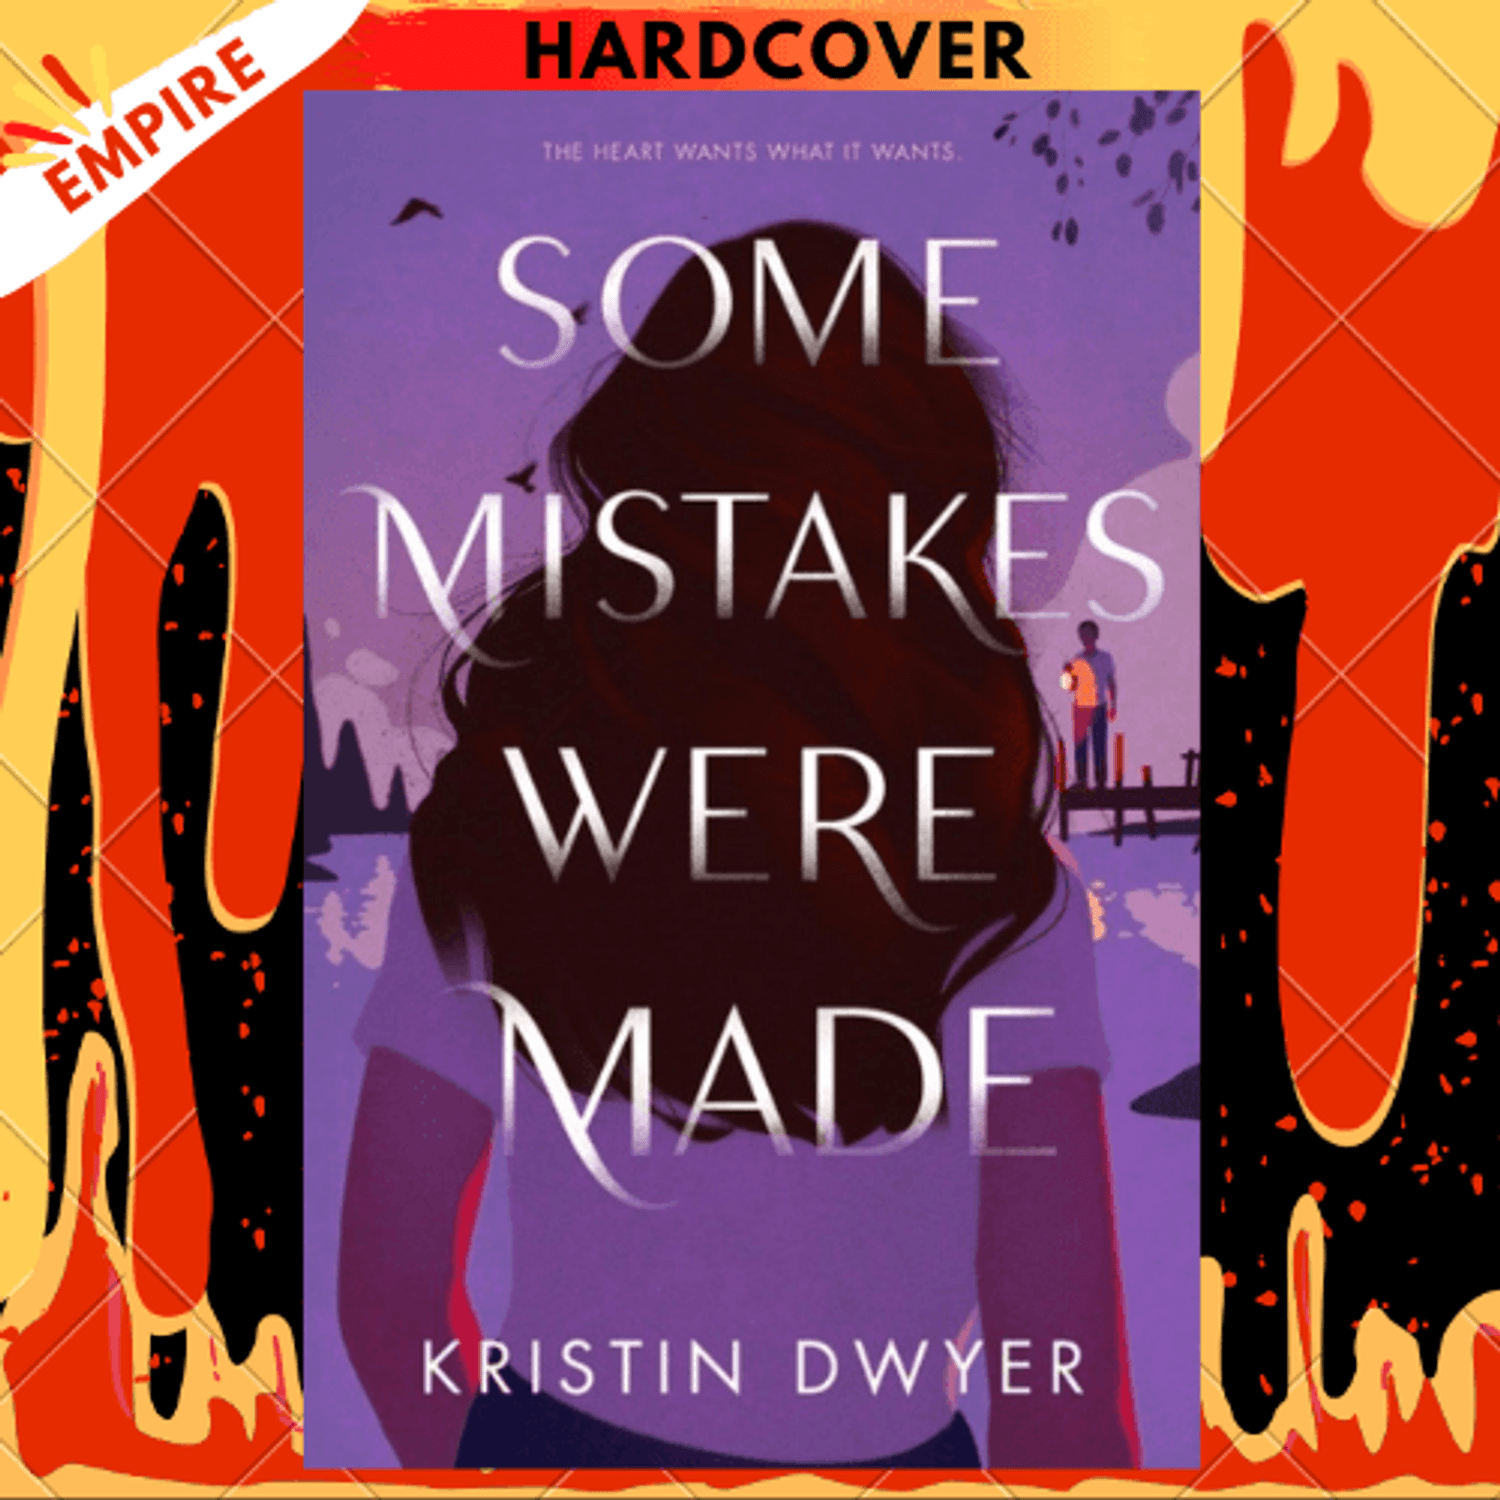 Mistakes Were Made by Meryl Wilsner - Audiobook 